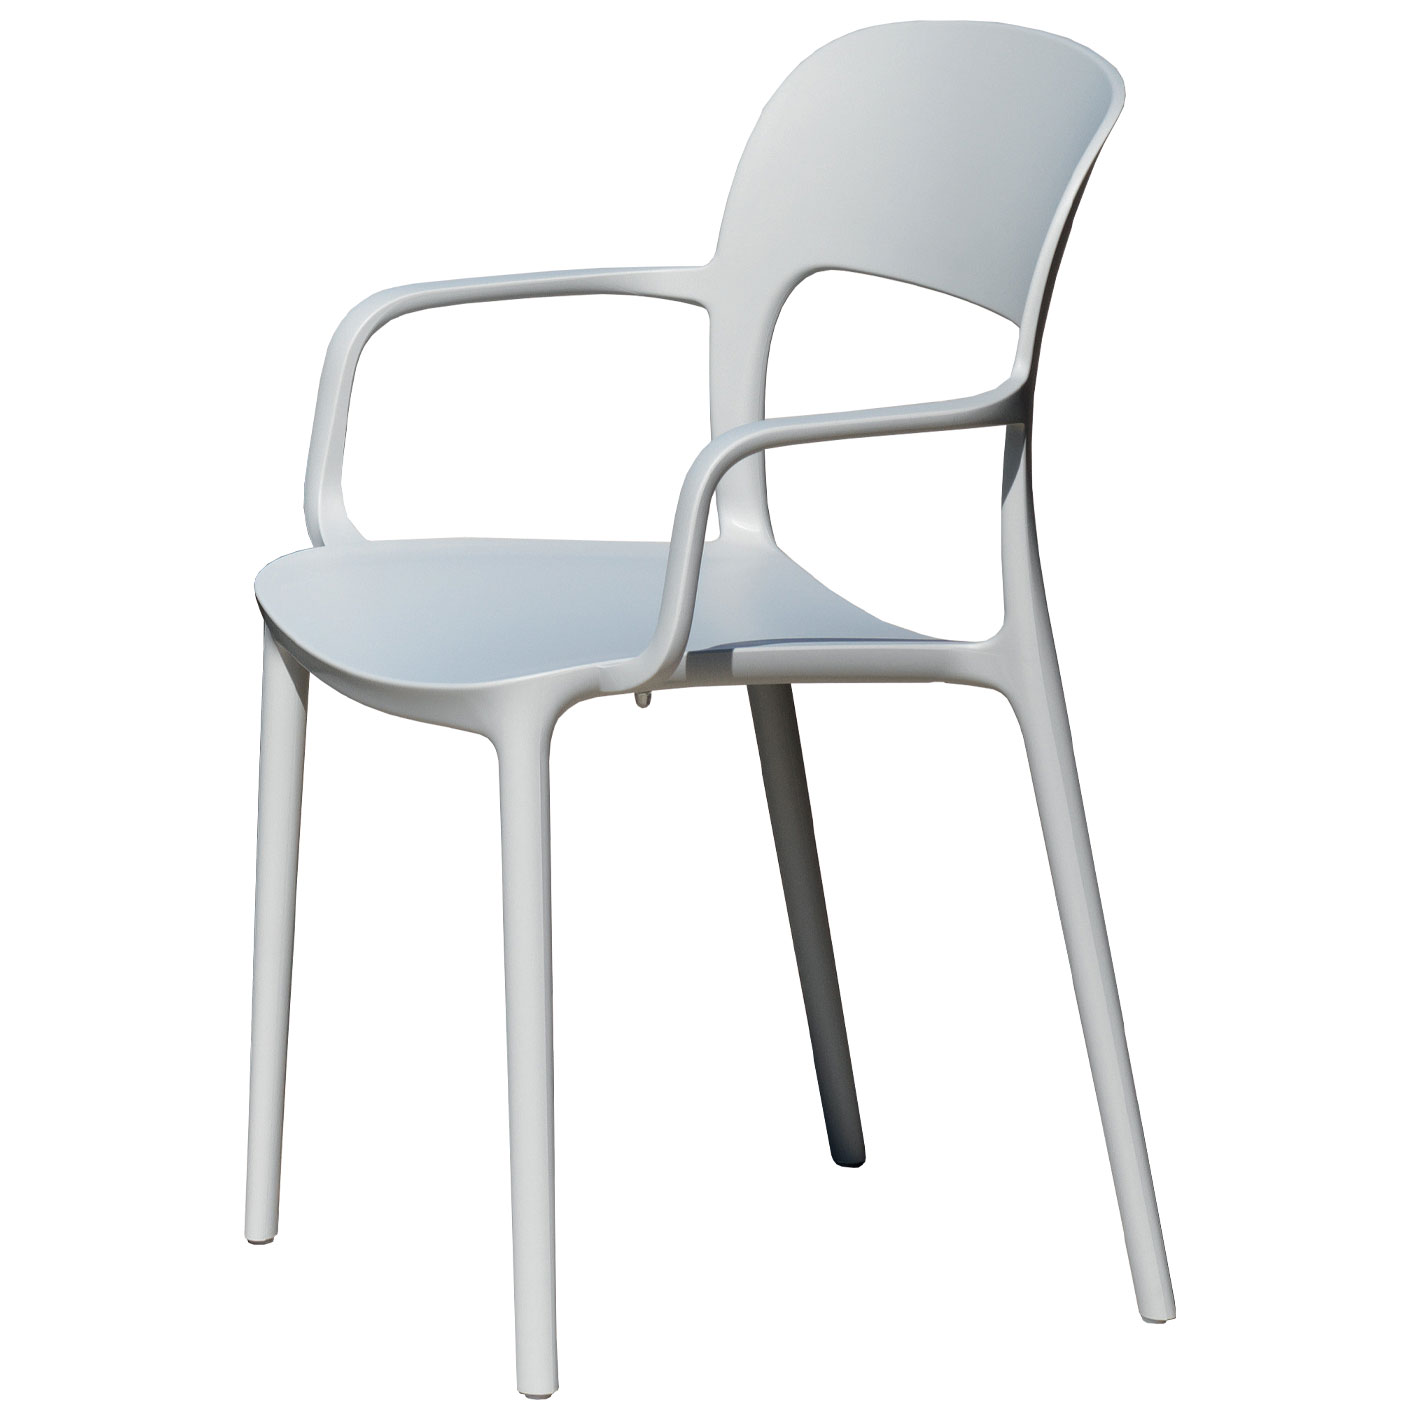 Tische & Stühle - GIPSY Armlehnstuhl